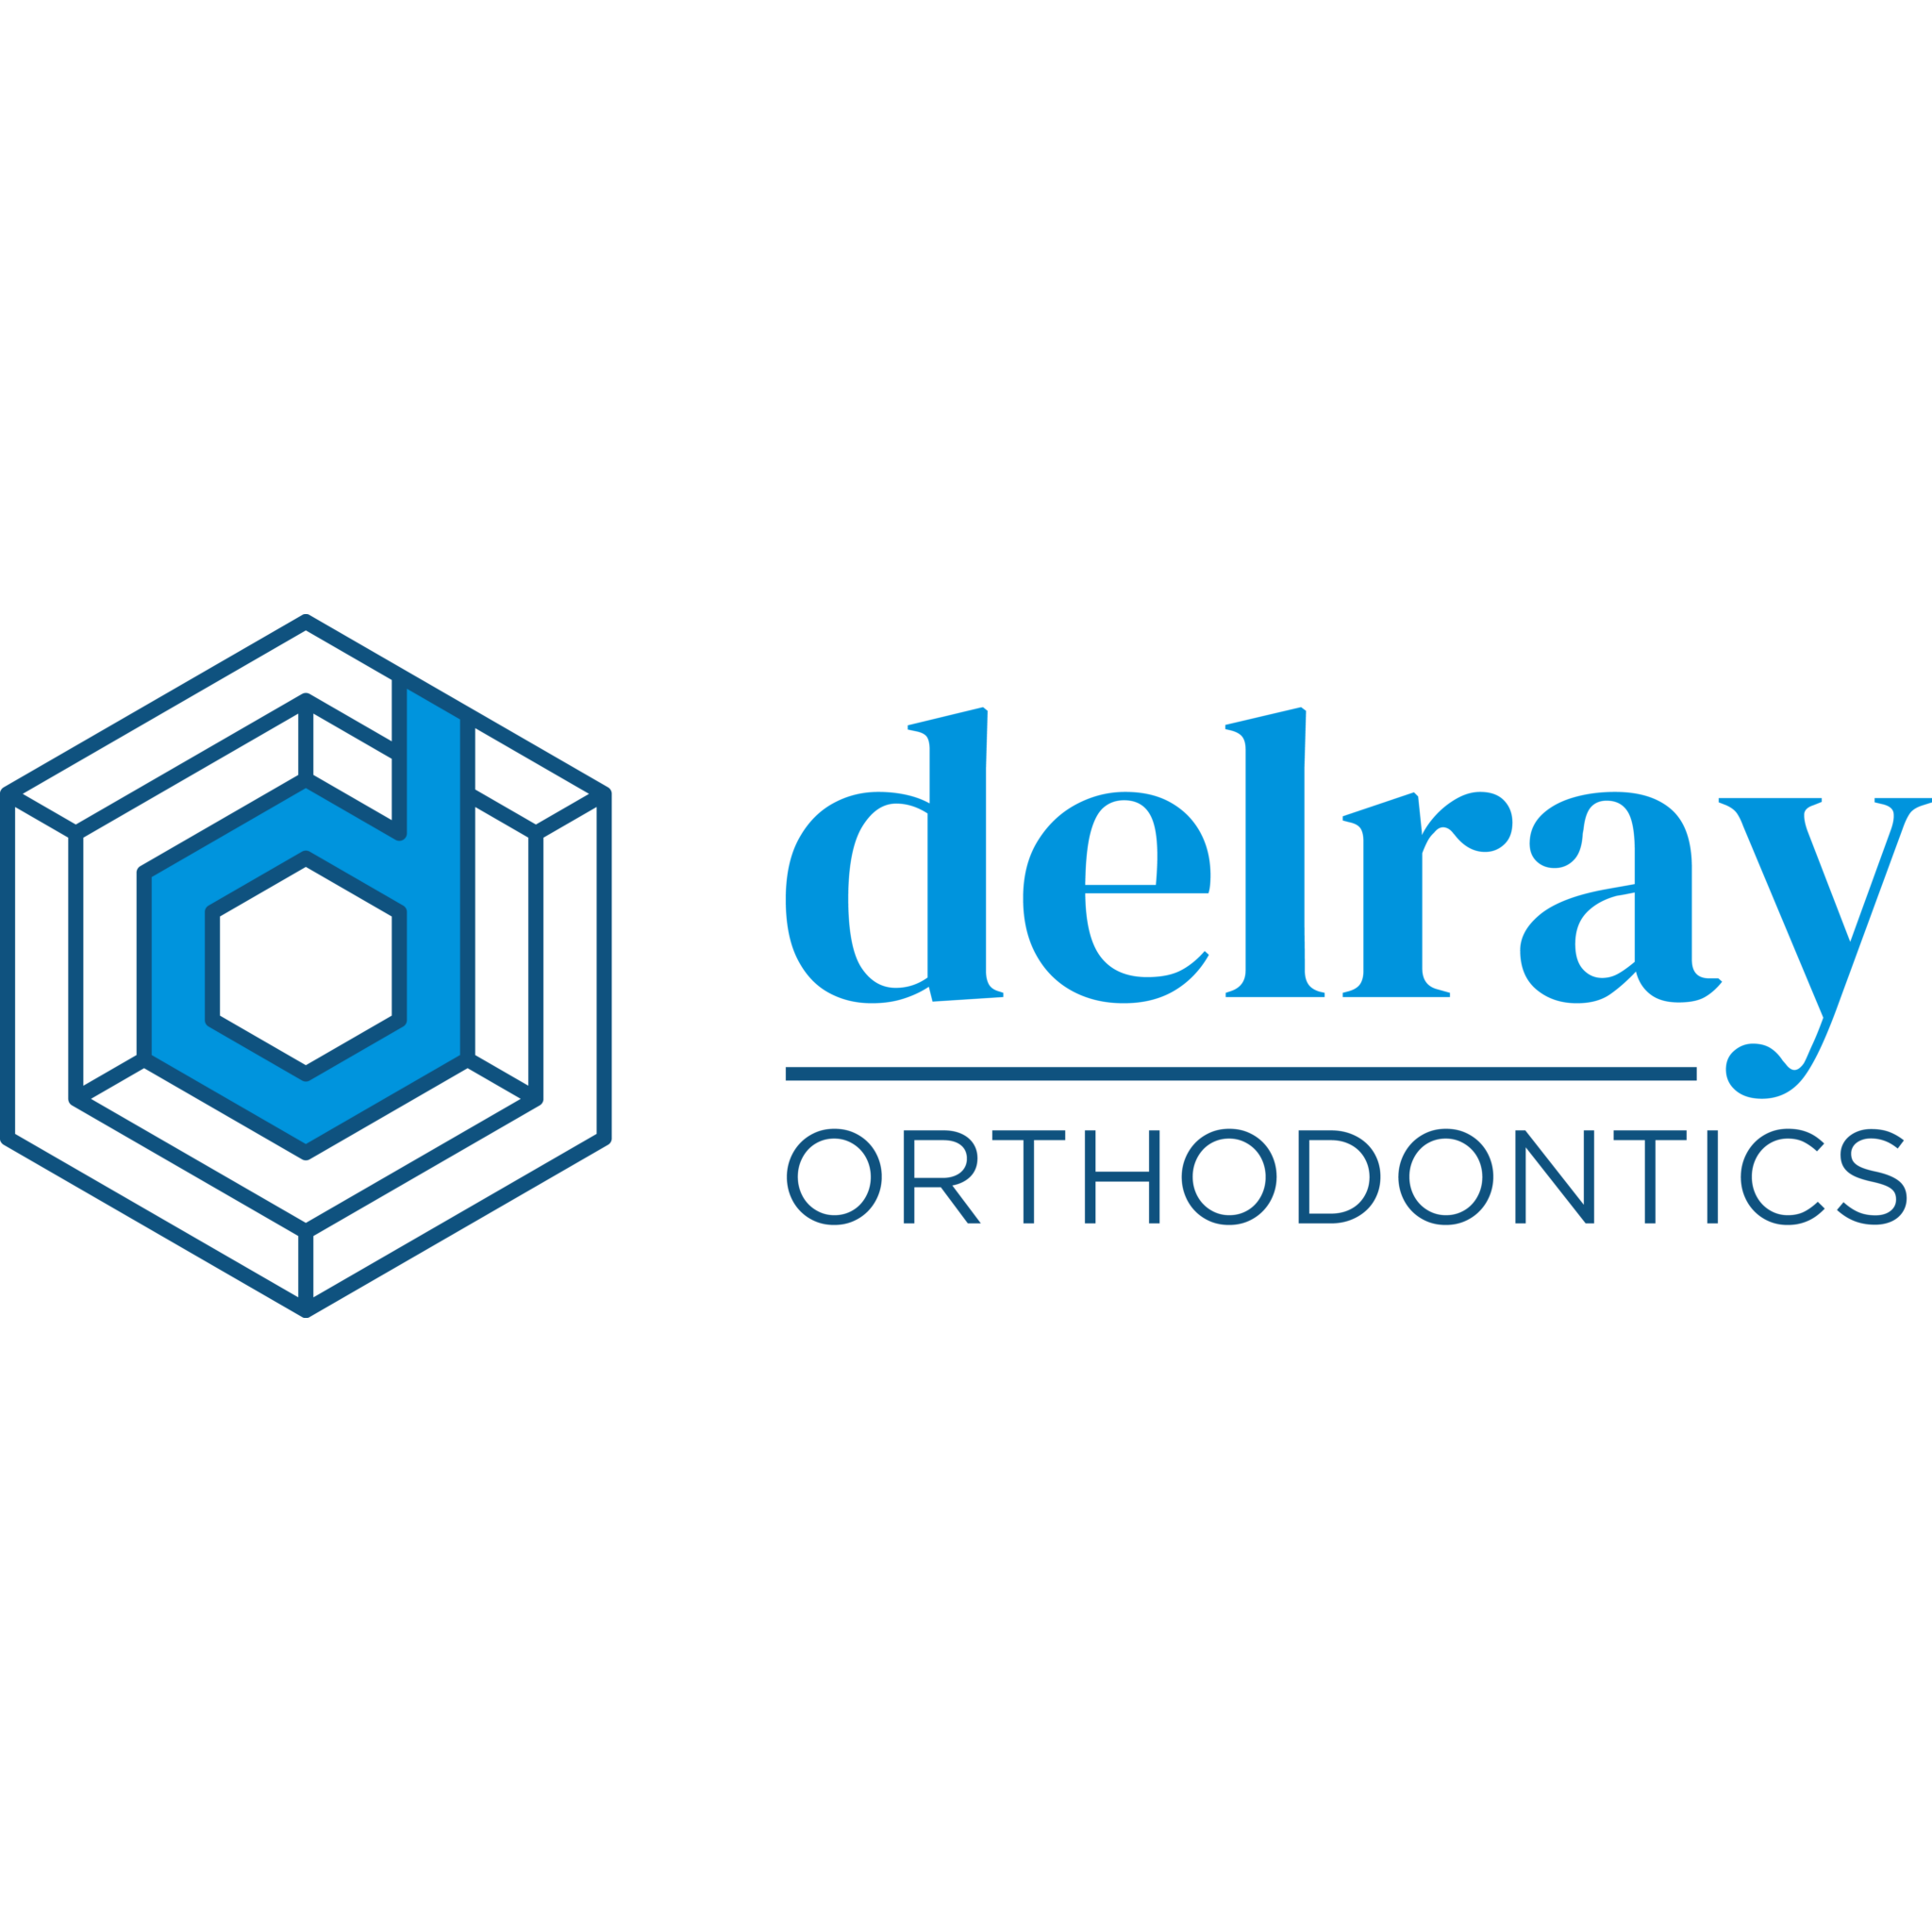 Delray Orthodontics